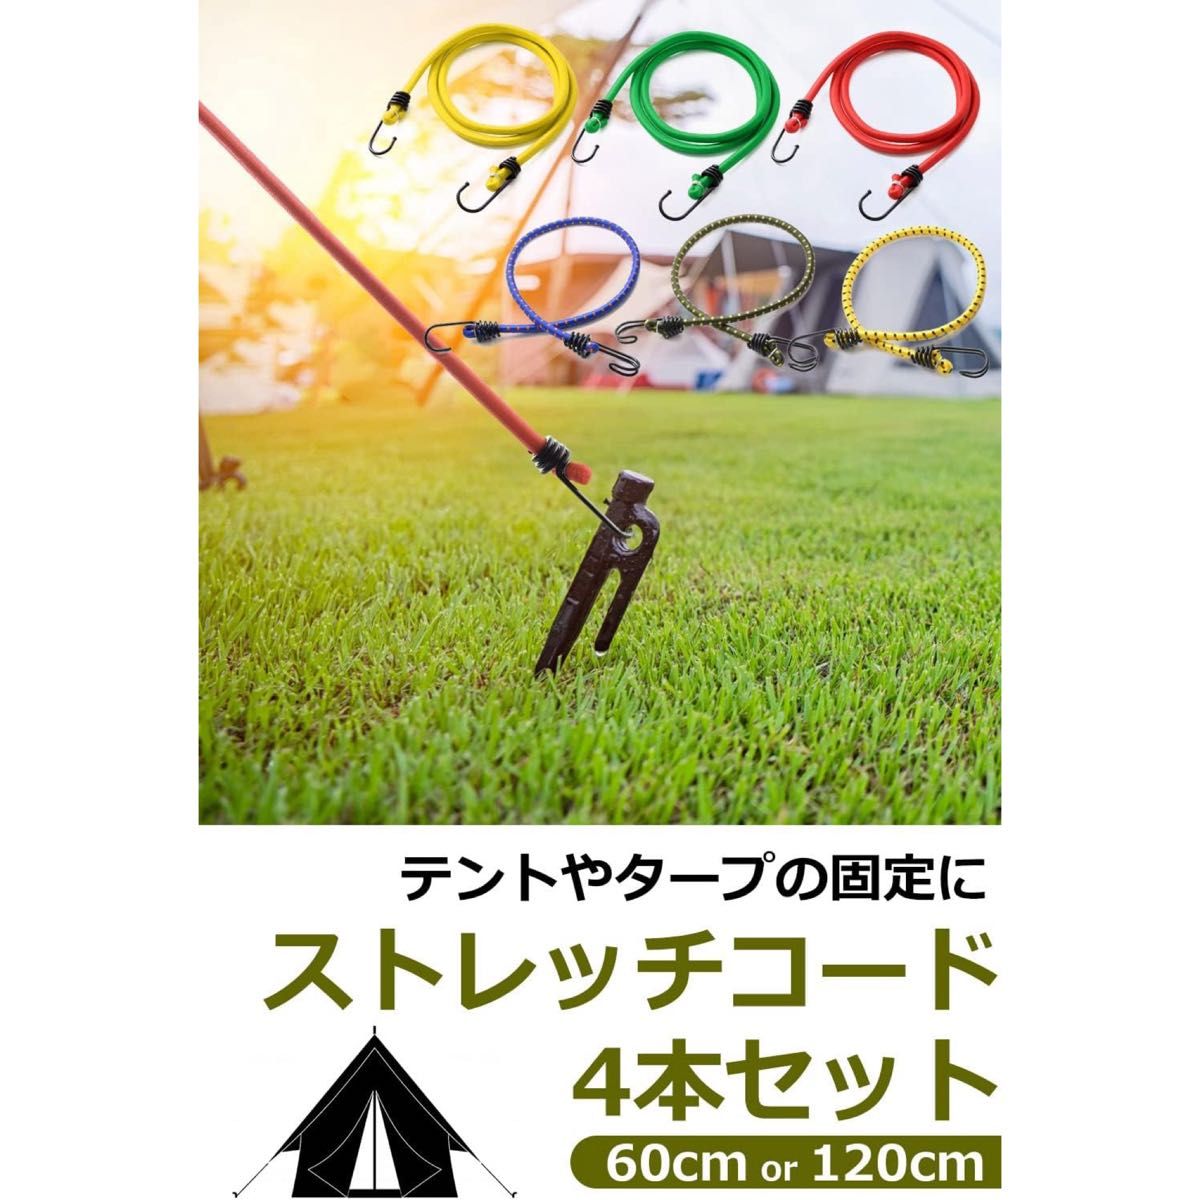 アウトドアシーズン【キャンプ】ストレッチコード 4本セット 固定ロープ 伸縮性